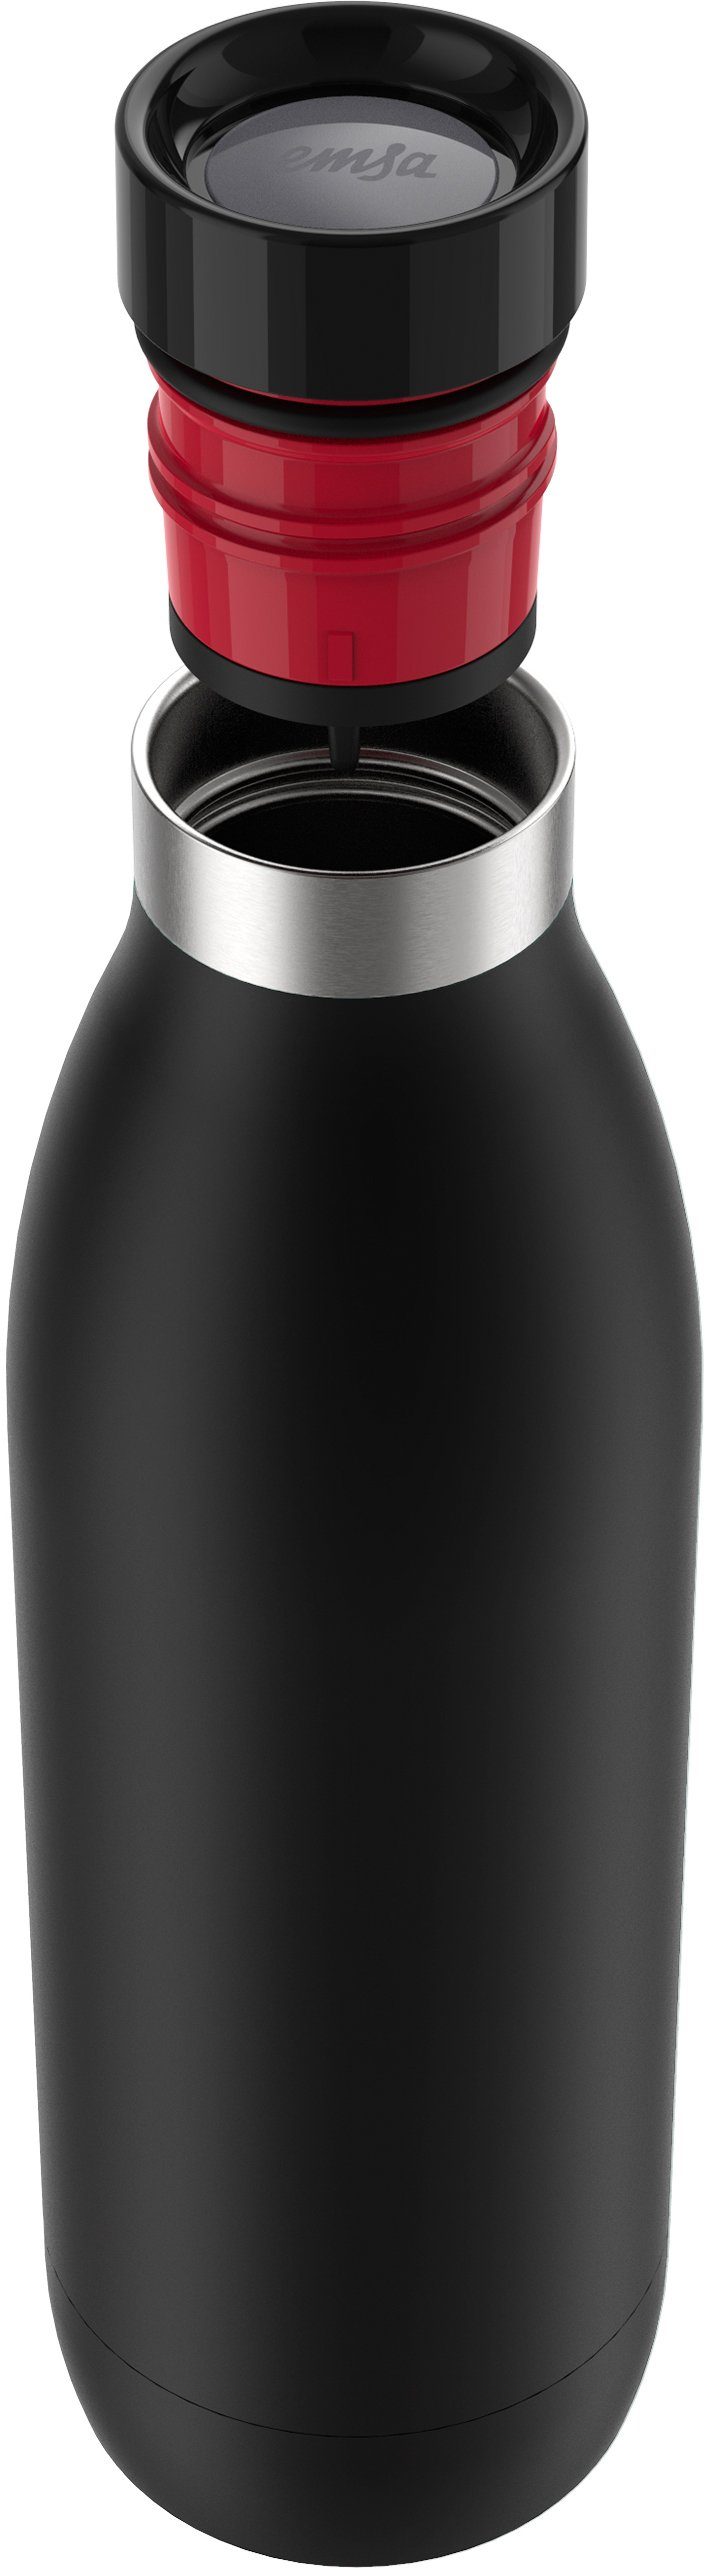 Emsa Trinkflasche Bludrop Edelstahl, warm/24h Deckel, kühl, spülmaschinenfest 12h schwarz Color, Quick-Press